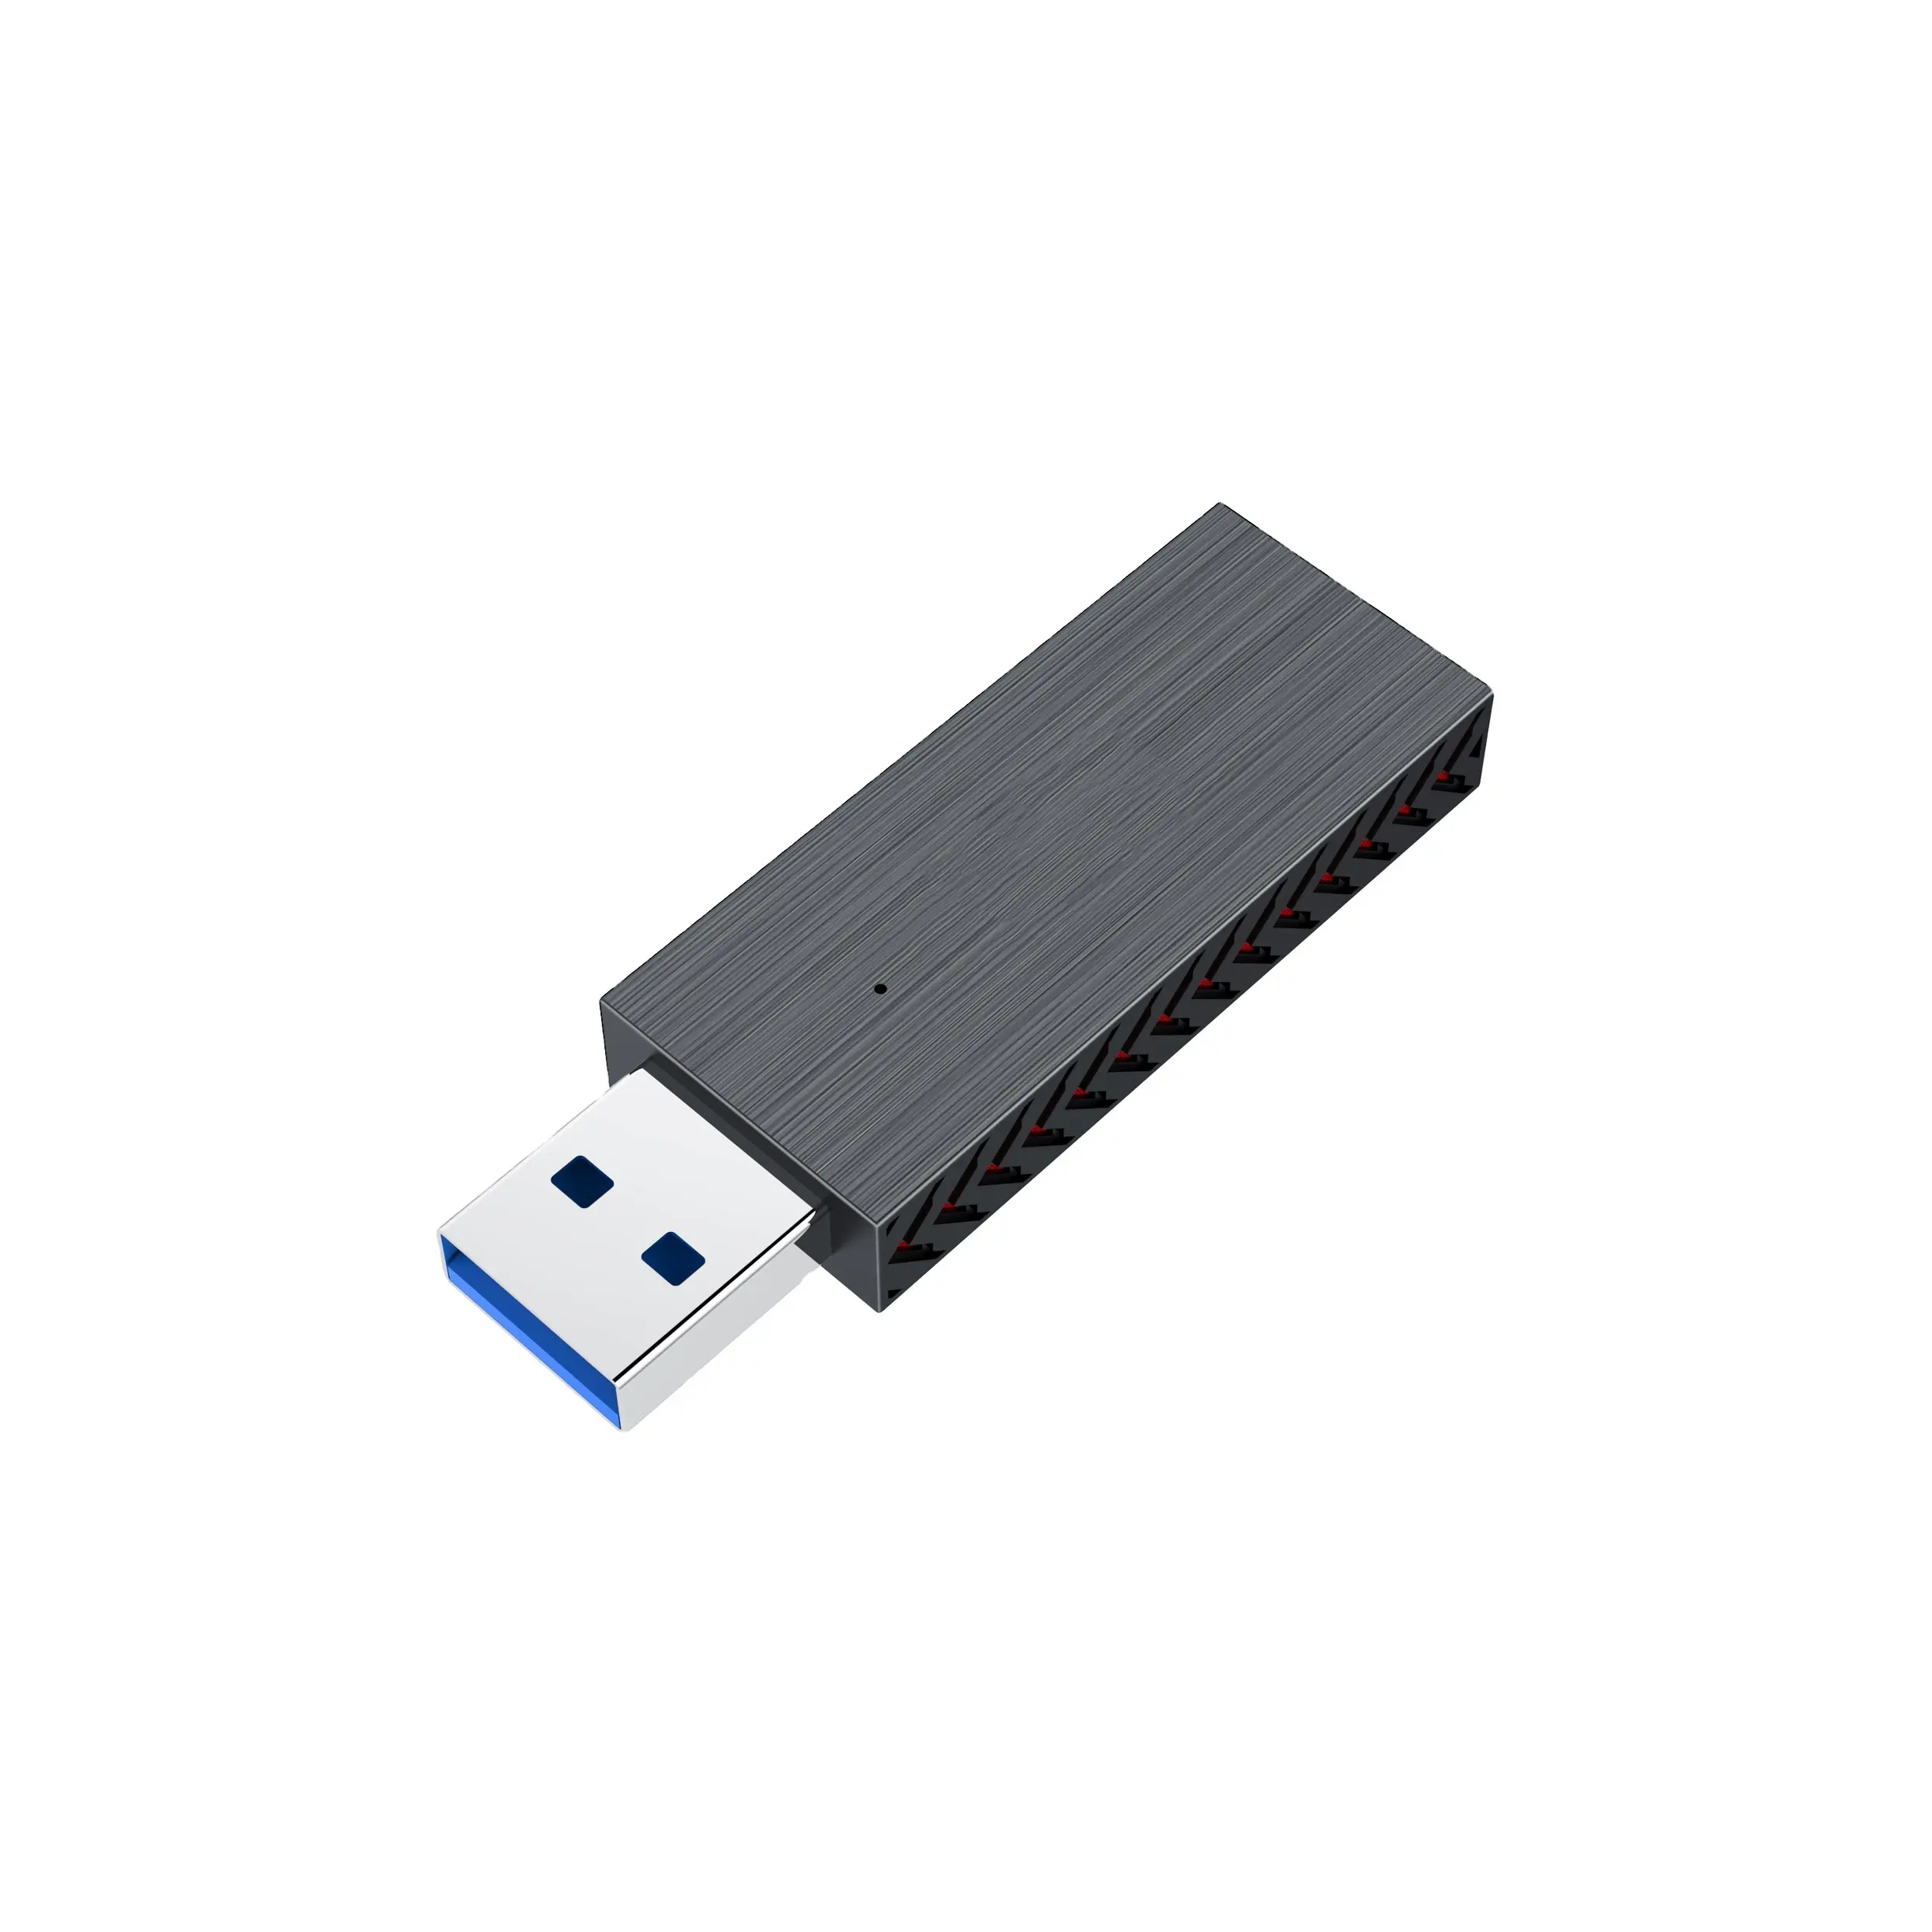 고품질 AX3000 와이파이 6 듀얼 밴드 PCIe 와이파이 어댑터 동글 USB 와이파이 USB 어댑터 USB 무선 어댑터 노트북